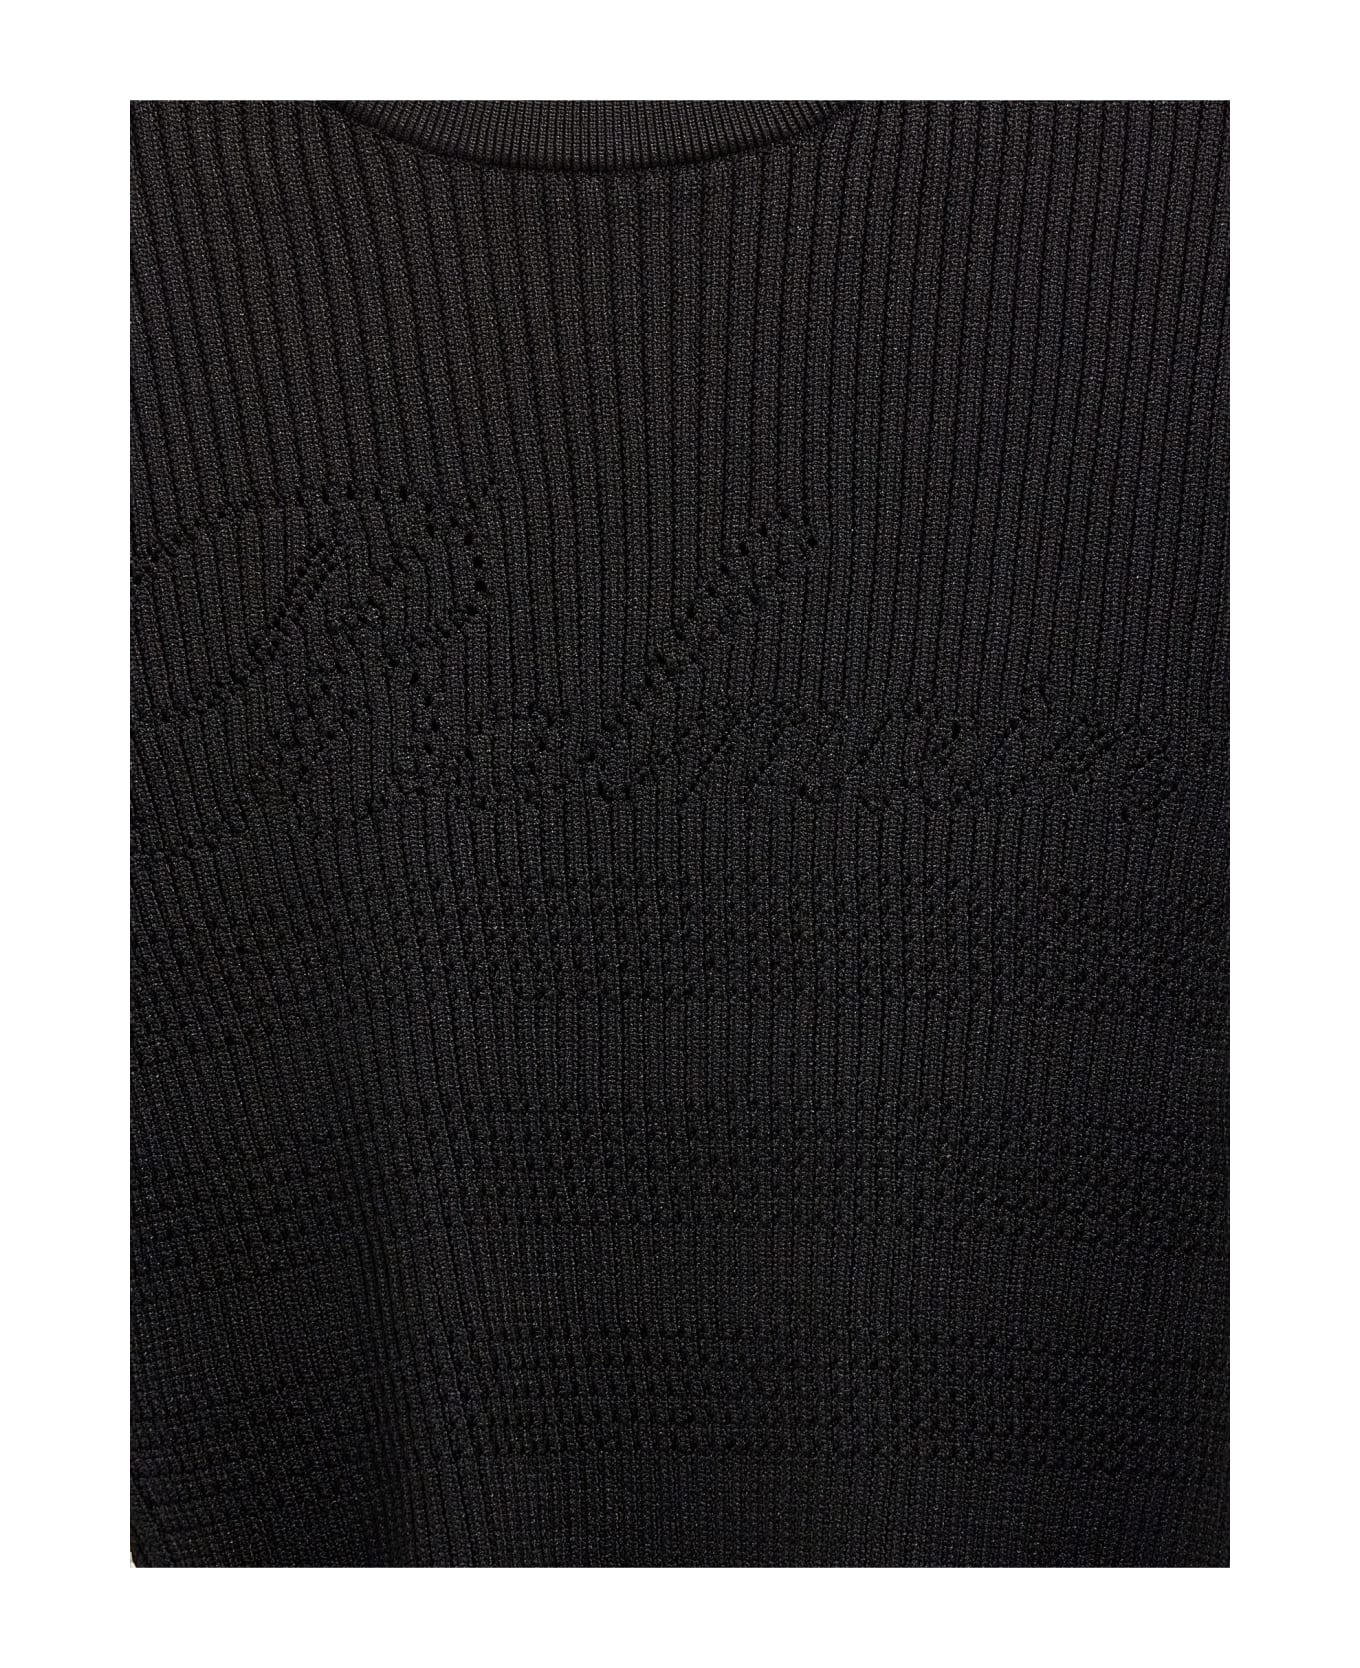 Balmain Signature Knit Jumper - BLACK ニットウェア